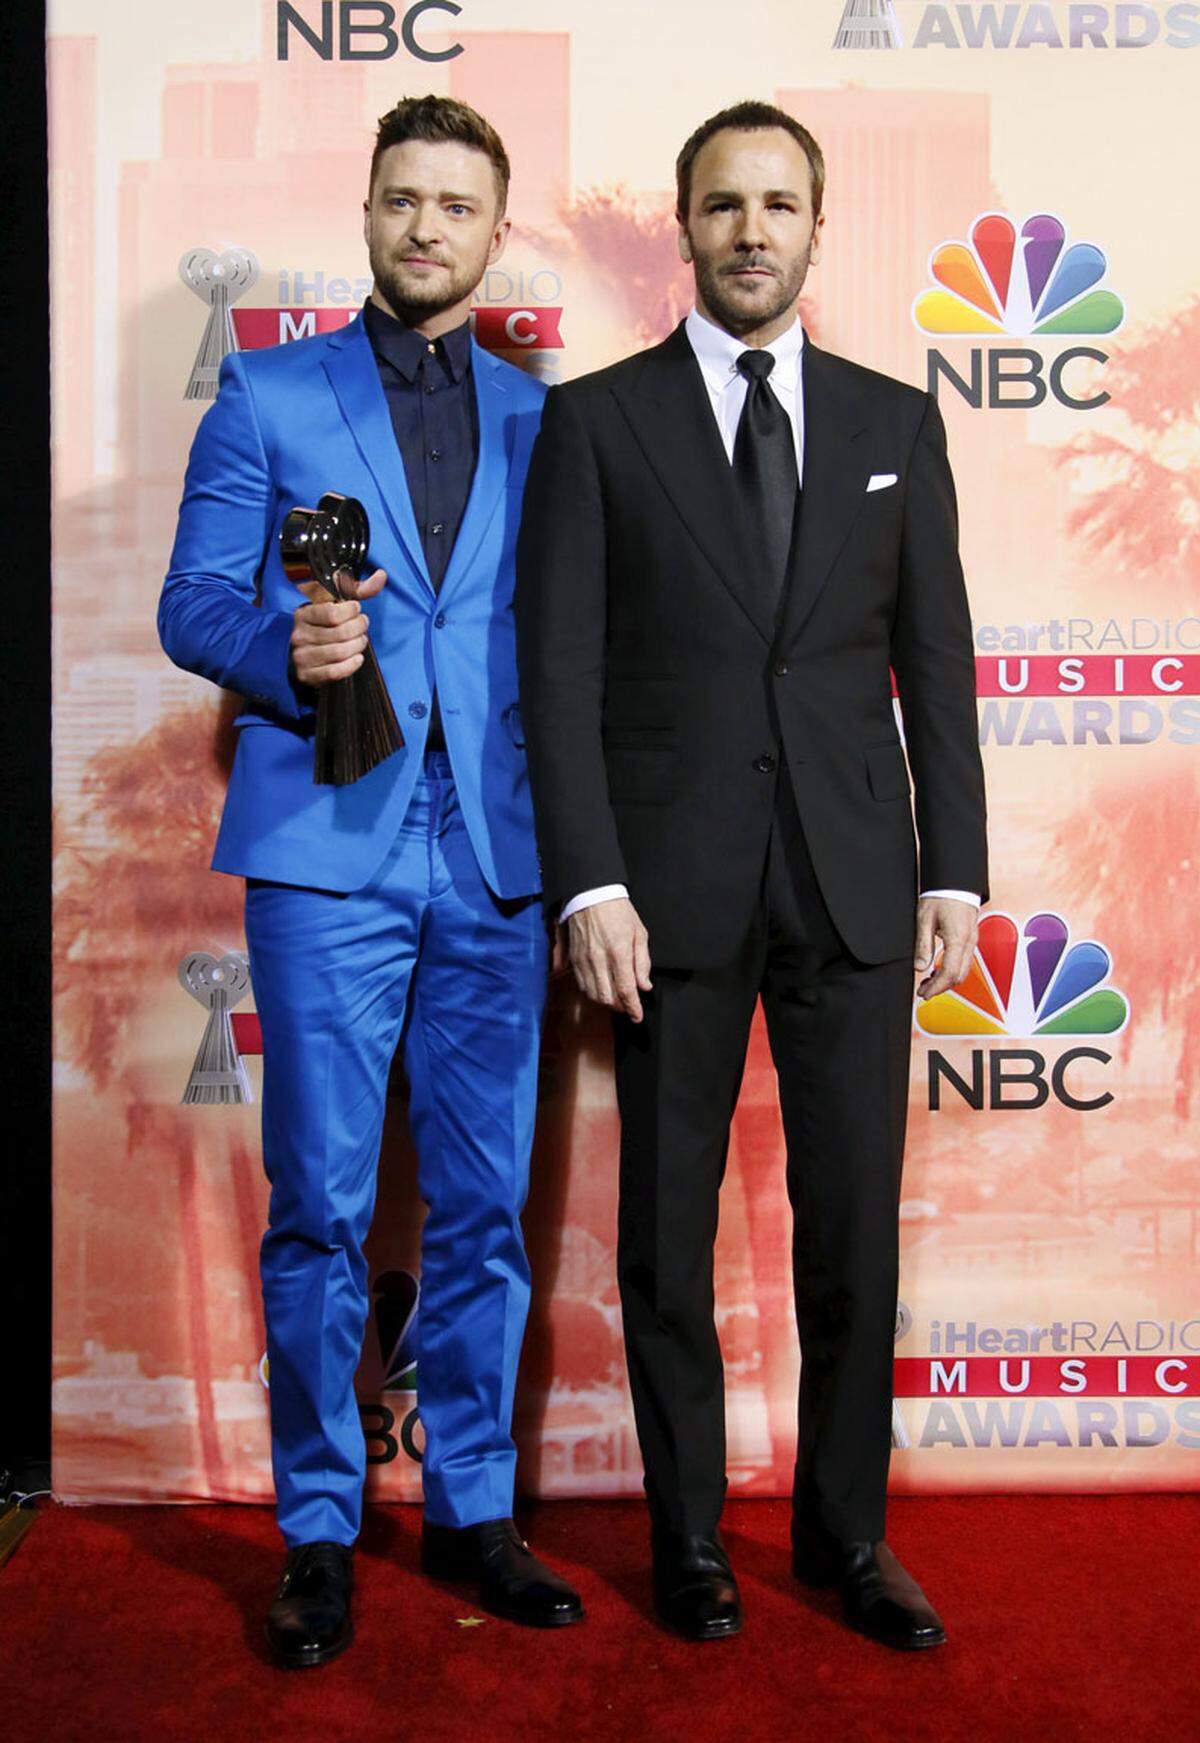 Justin Timberlake nahm ganz in Blau den "Innovator" Award entgegen, den er für seine Verdienste für die Musikindustrie erhielt.